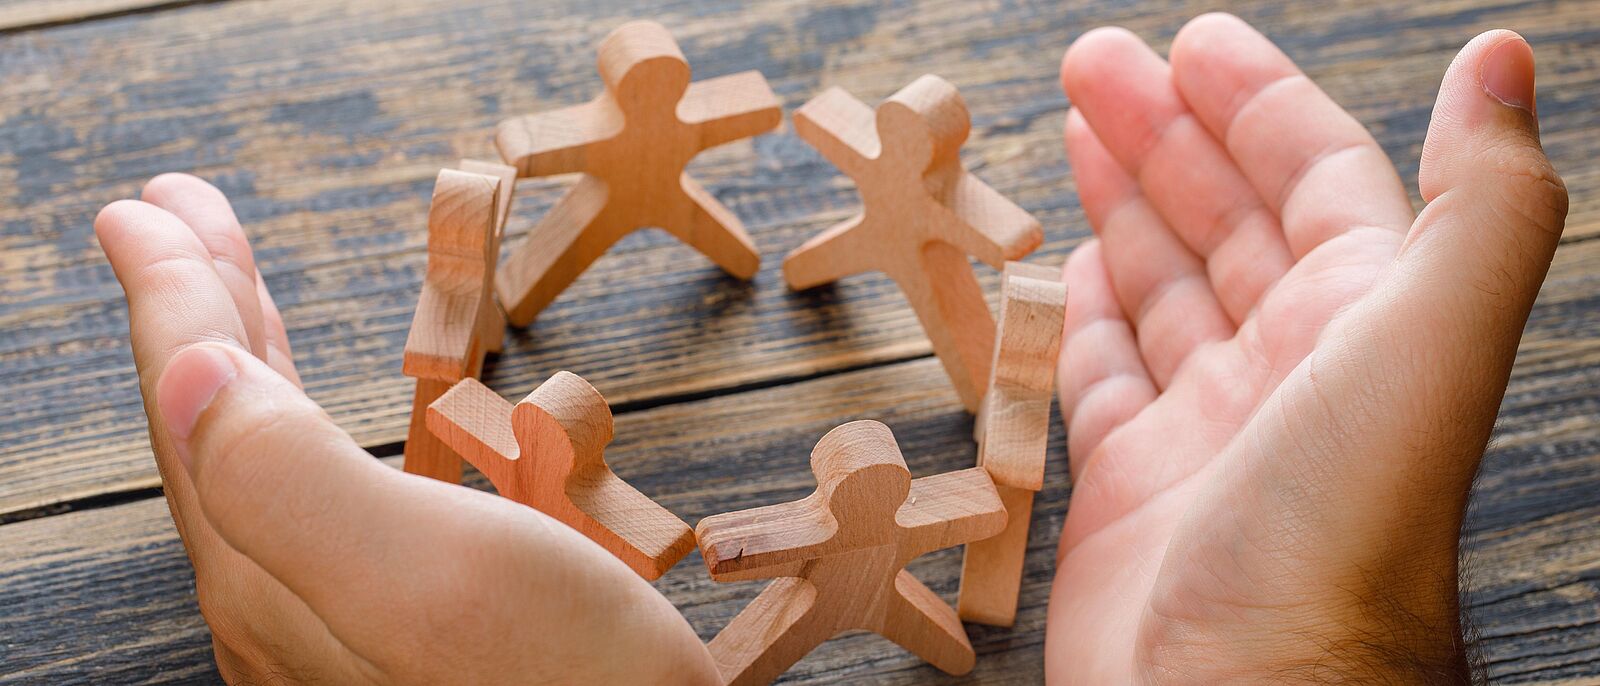 Auf einem Holztisch sind mehrere Holzfiguren ,die sich an den Händen halten und damit einen Kreis bilden. Darum zwei Hände die die Holzfiguren schützend umfassen.